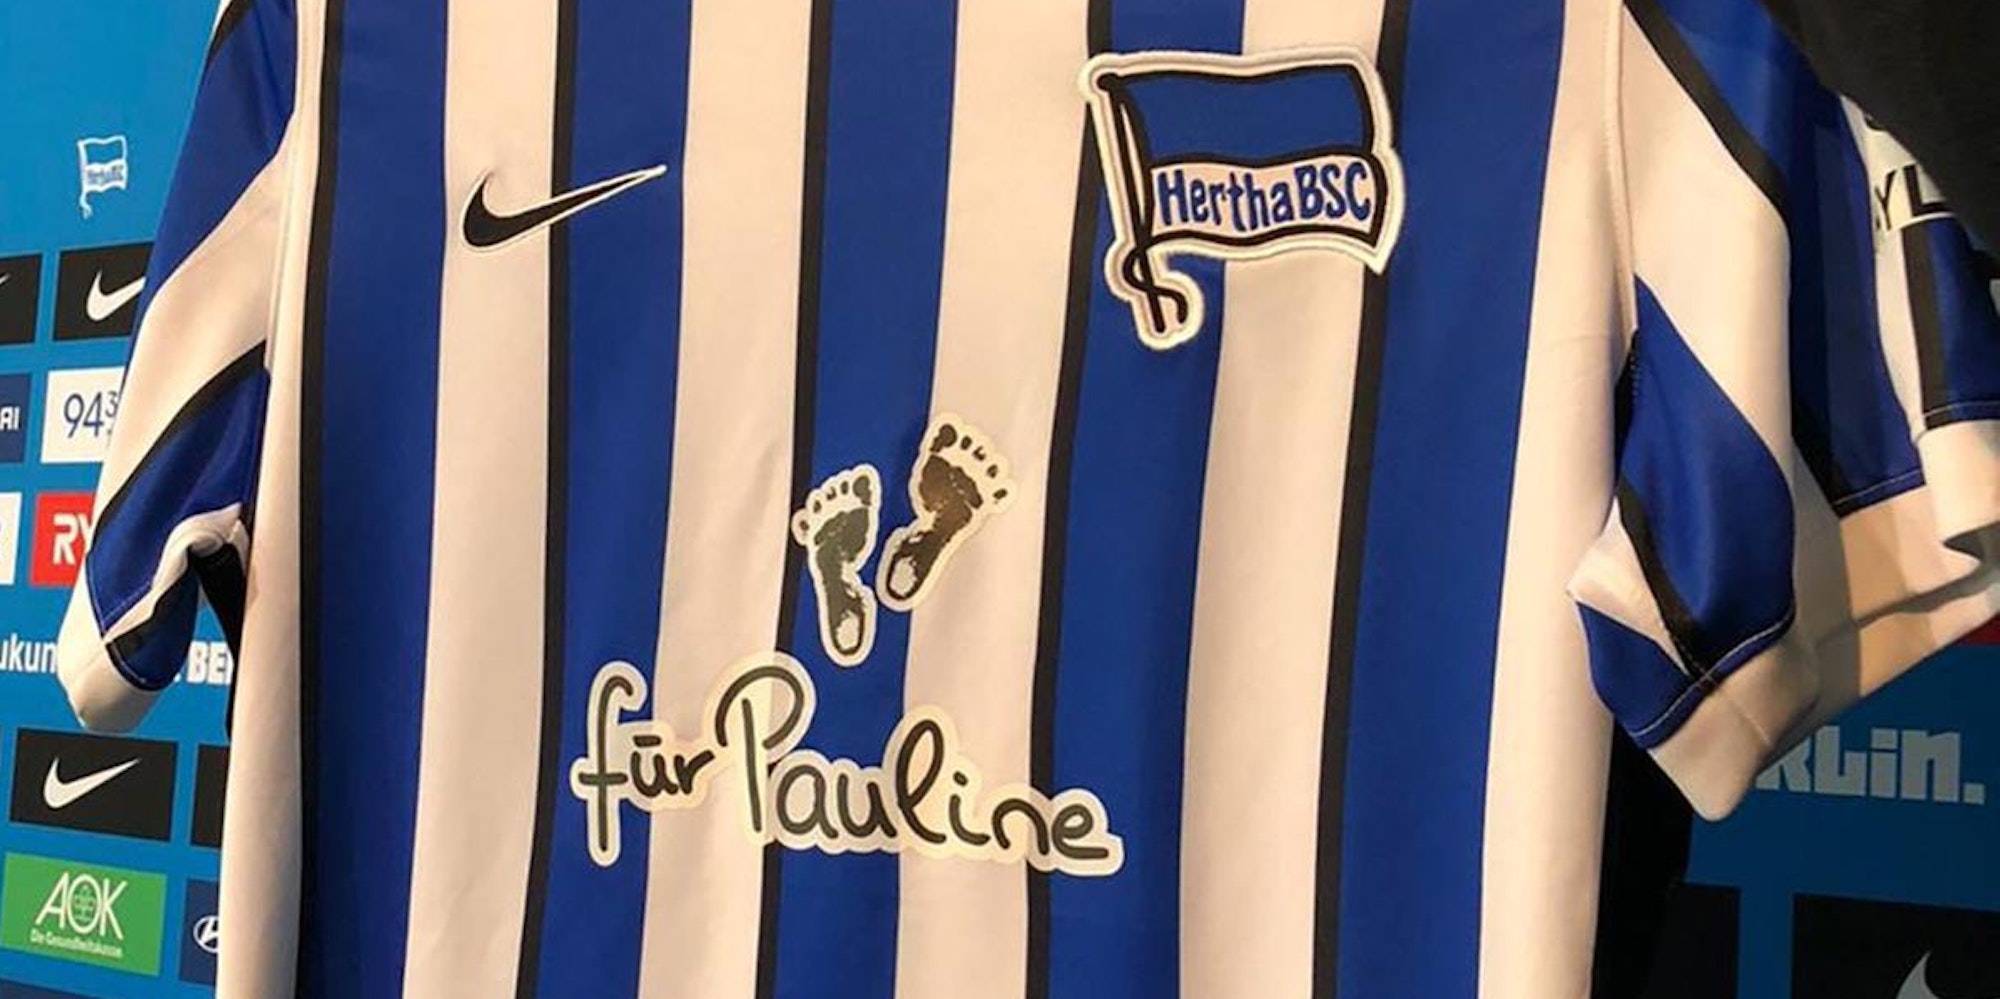 Hertha BSC Trikot für Pauline